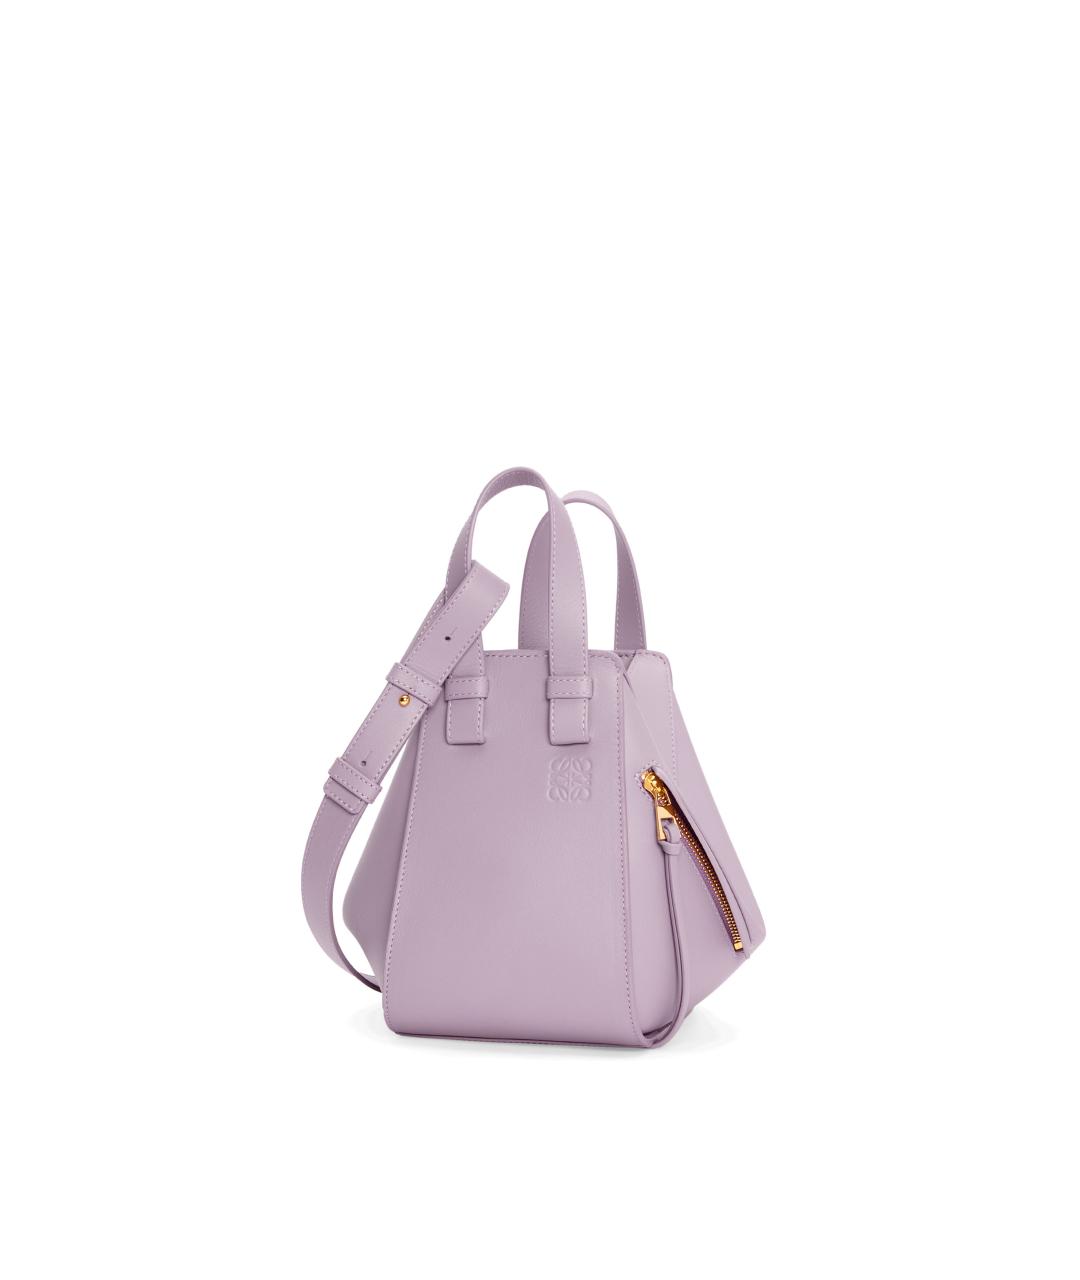 LOEWE Фиолетовая кожаная сумка с короткими ручками, фото 1